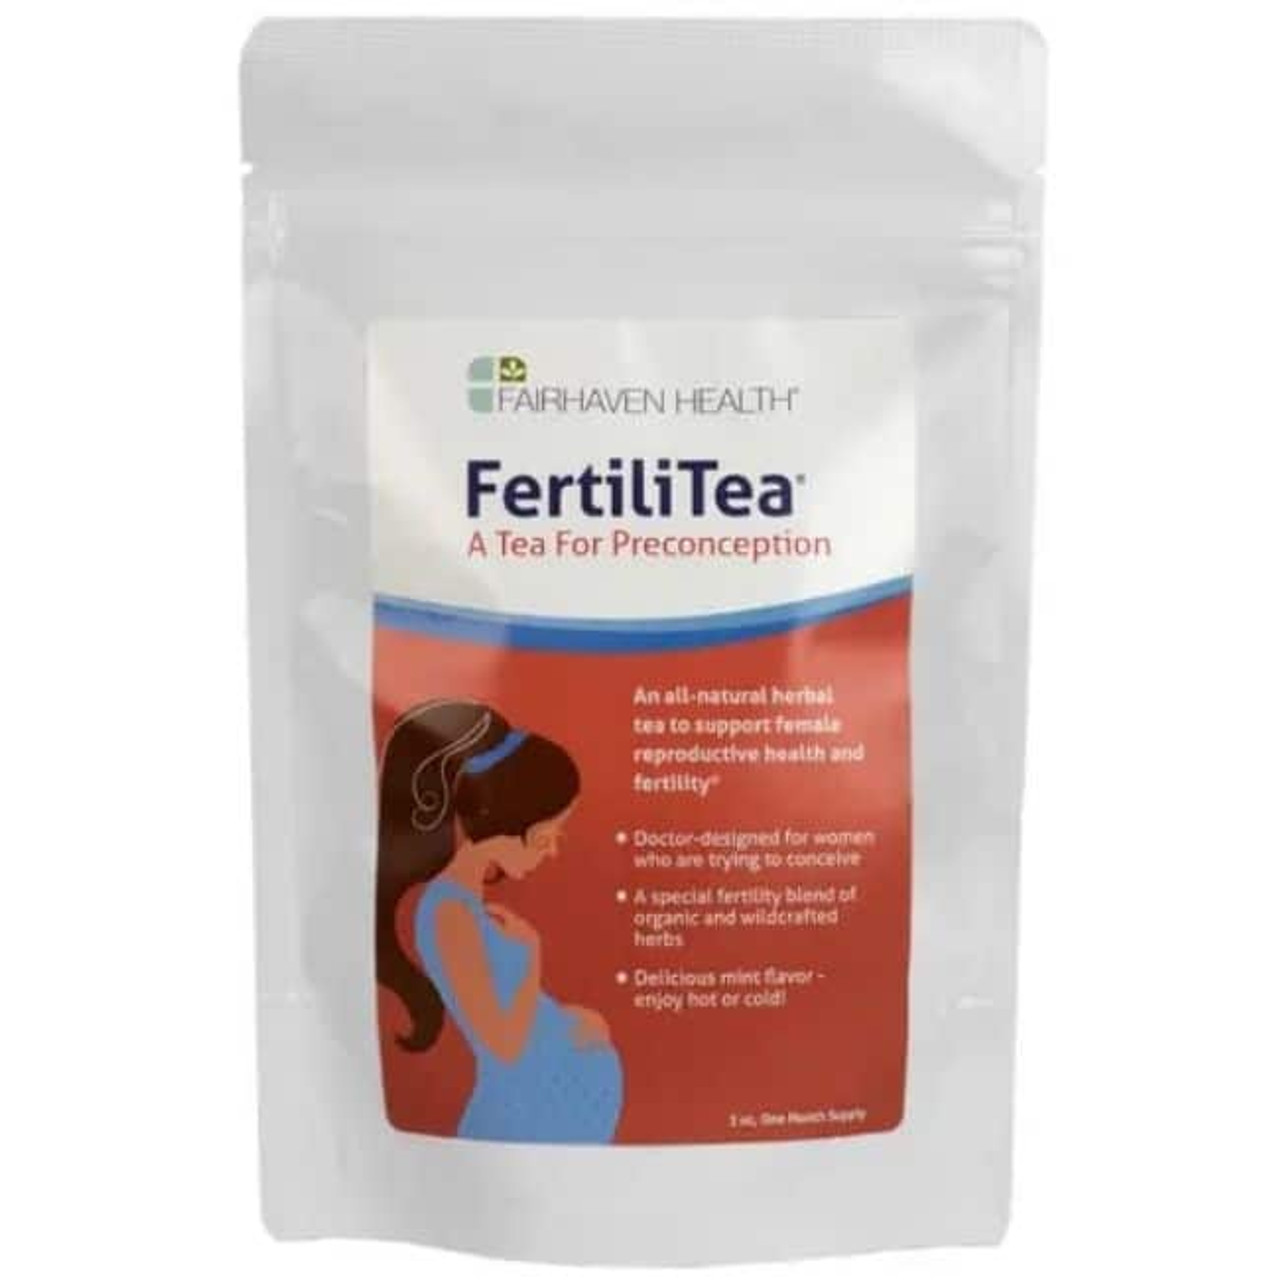 Fairhaven Health FertiliTea Fertility Tea for Women